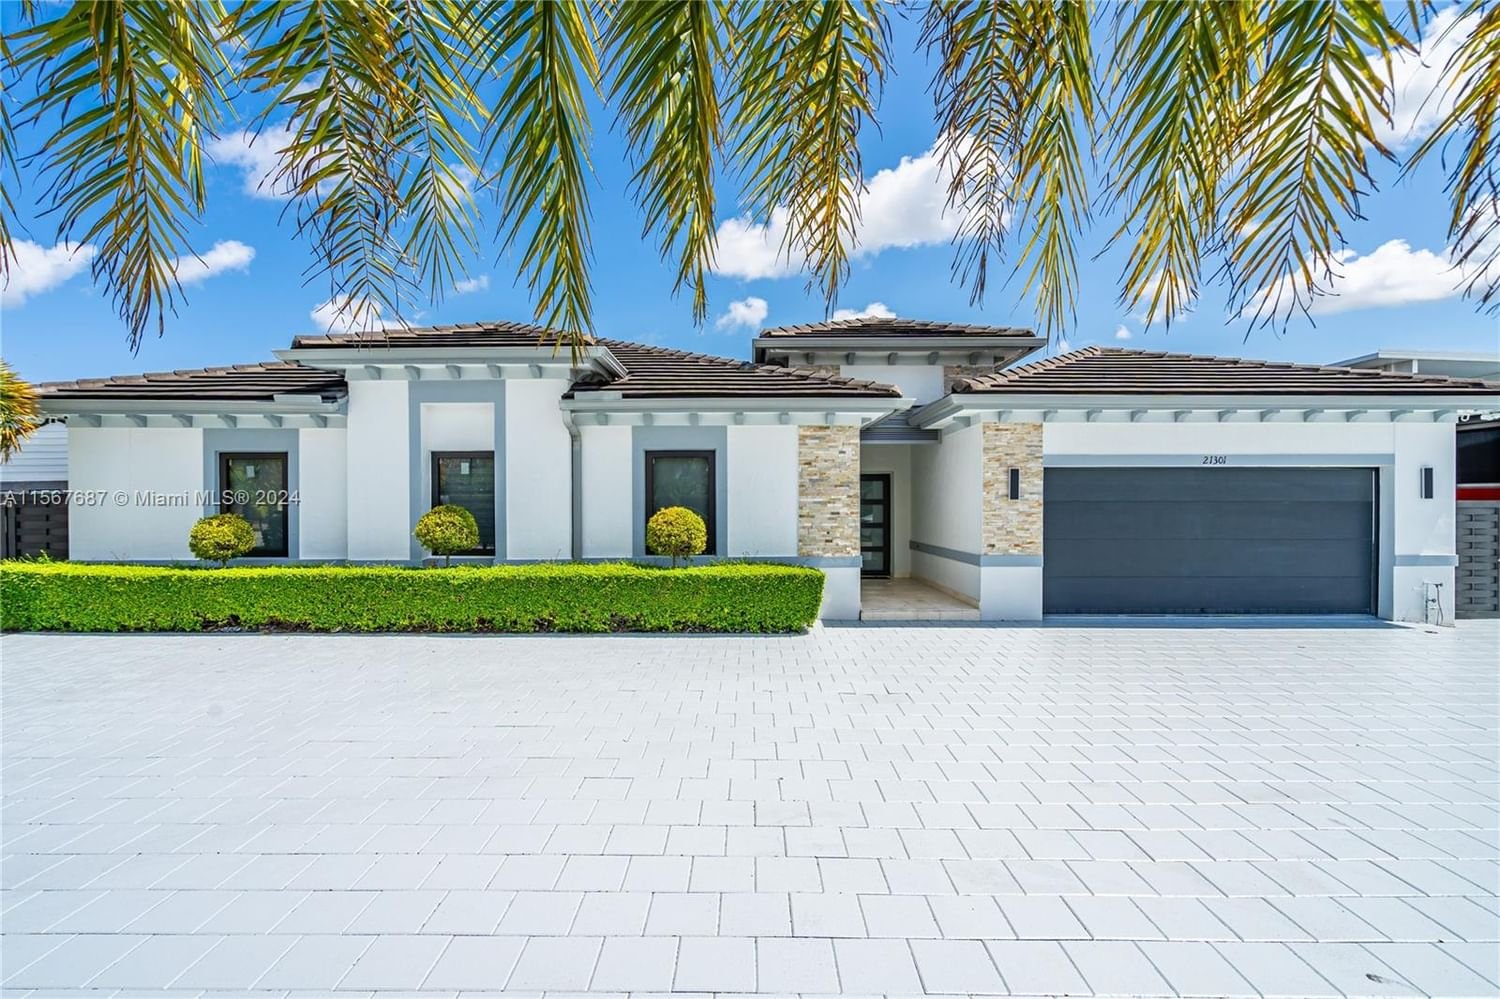 Real estate property located at 21301 132nd Ct, Miami-Dade County, BONITA GRAND ESTATES SOUT, Miami, FL